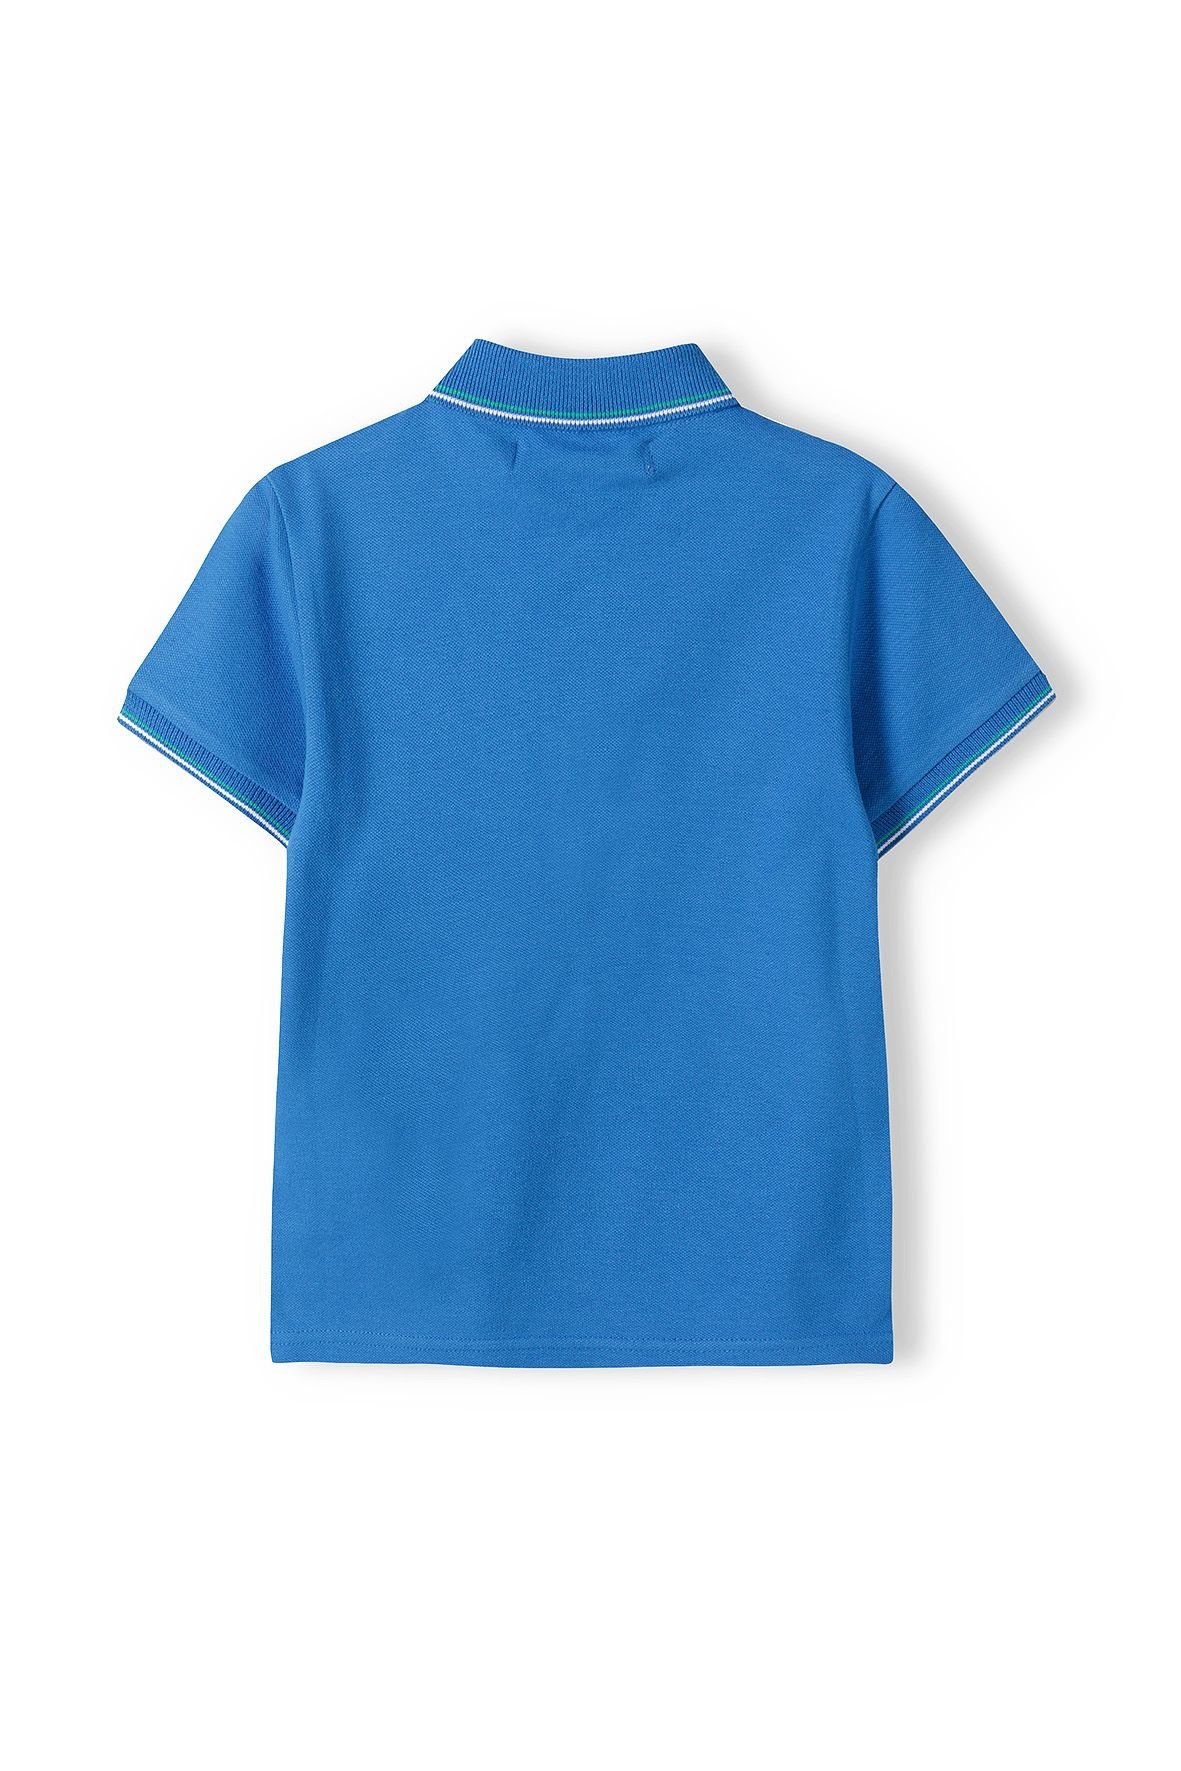 MINOTI (12m-14y) Blau Poloshirt Polohemd